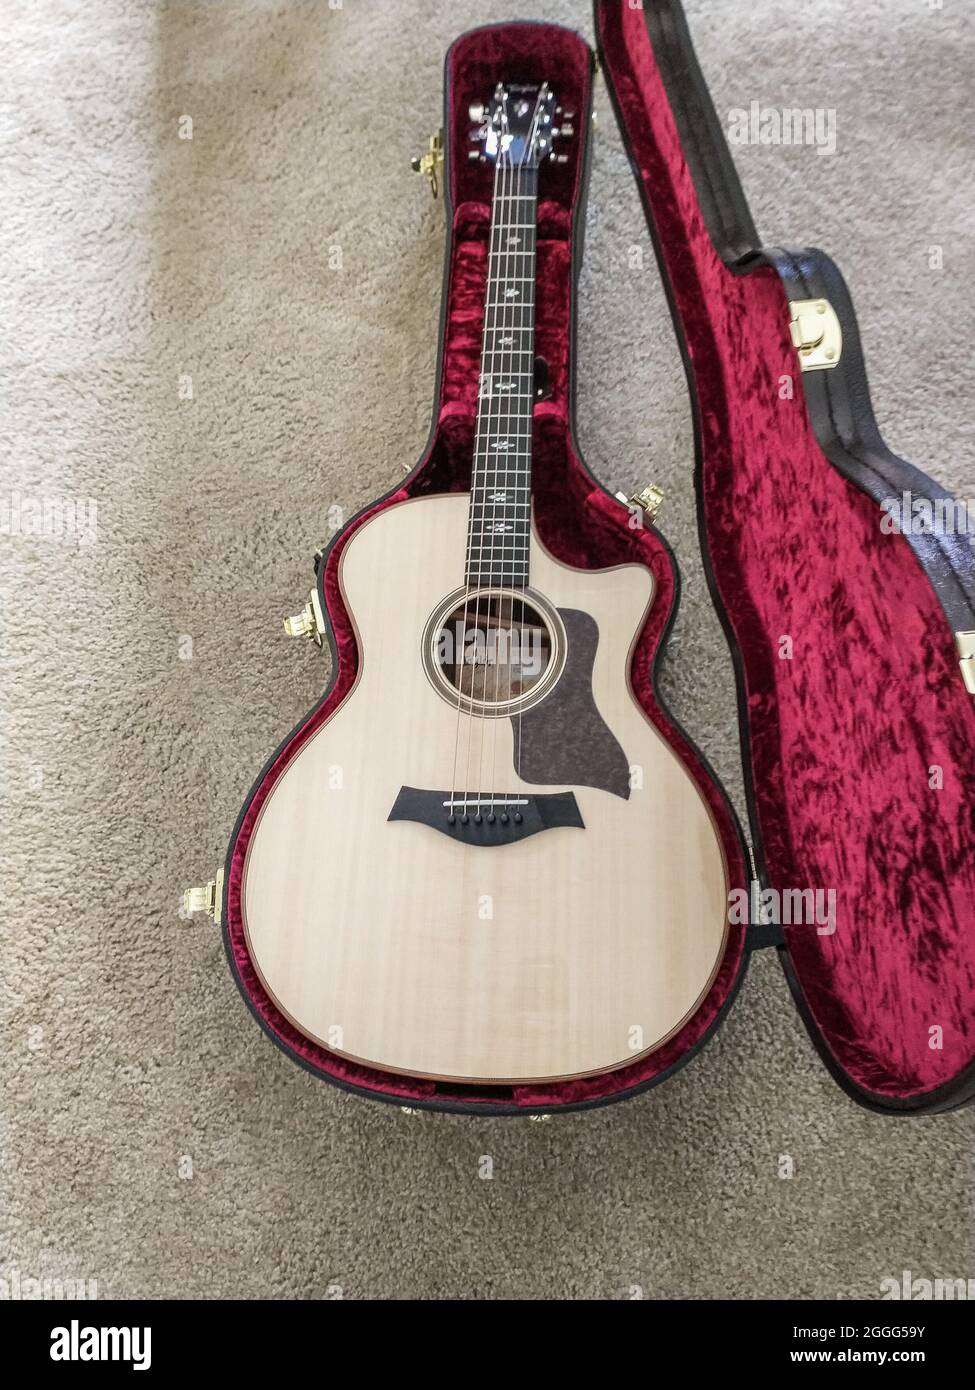 New Taylor Guitar en cas ouvert Banque D'Images